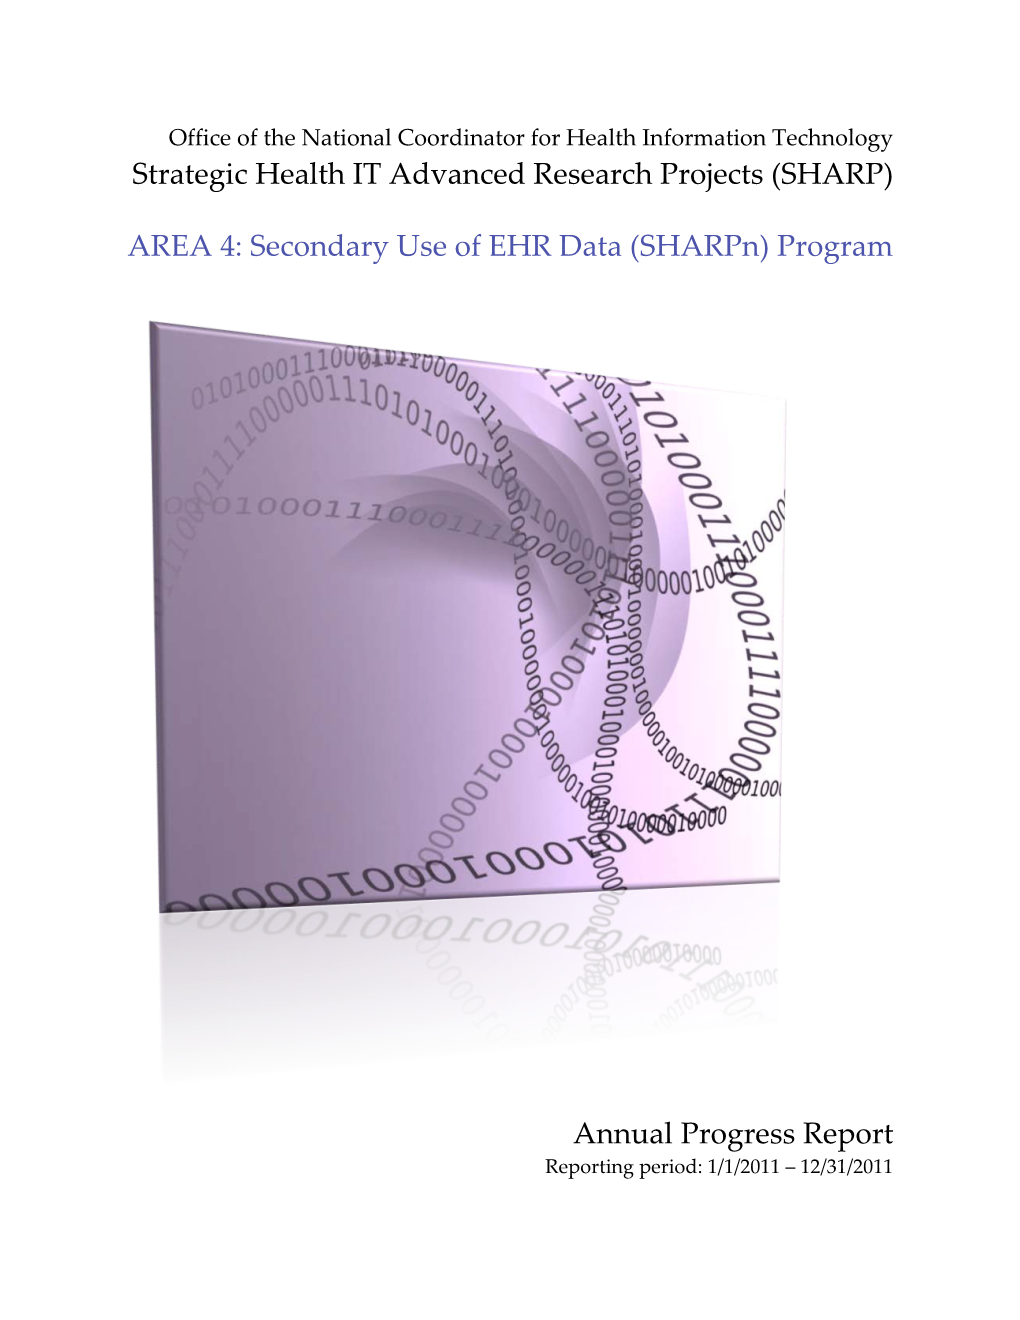 2011 Annual Progress Report